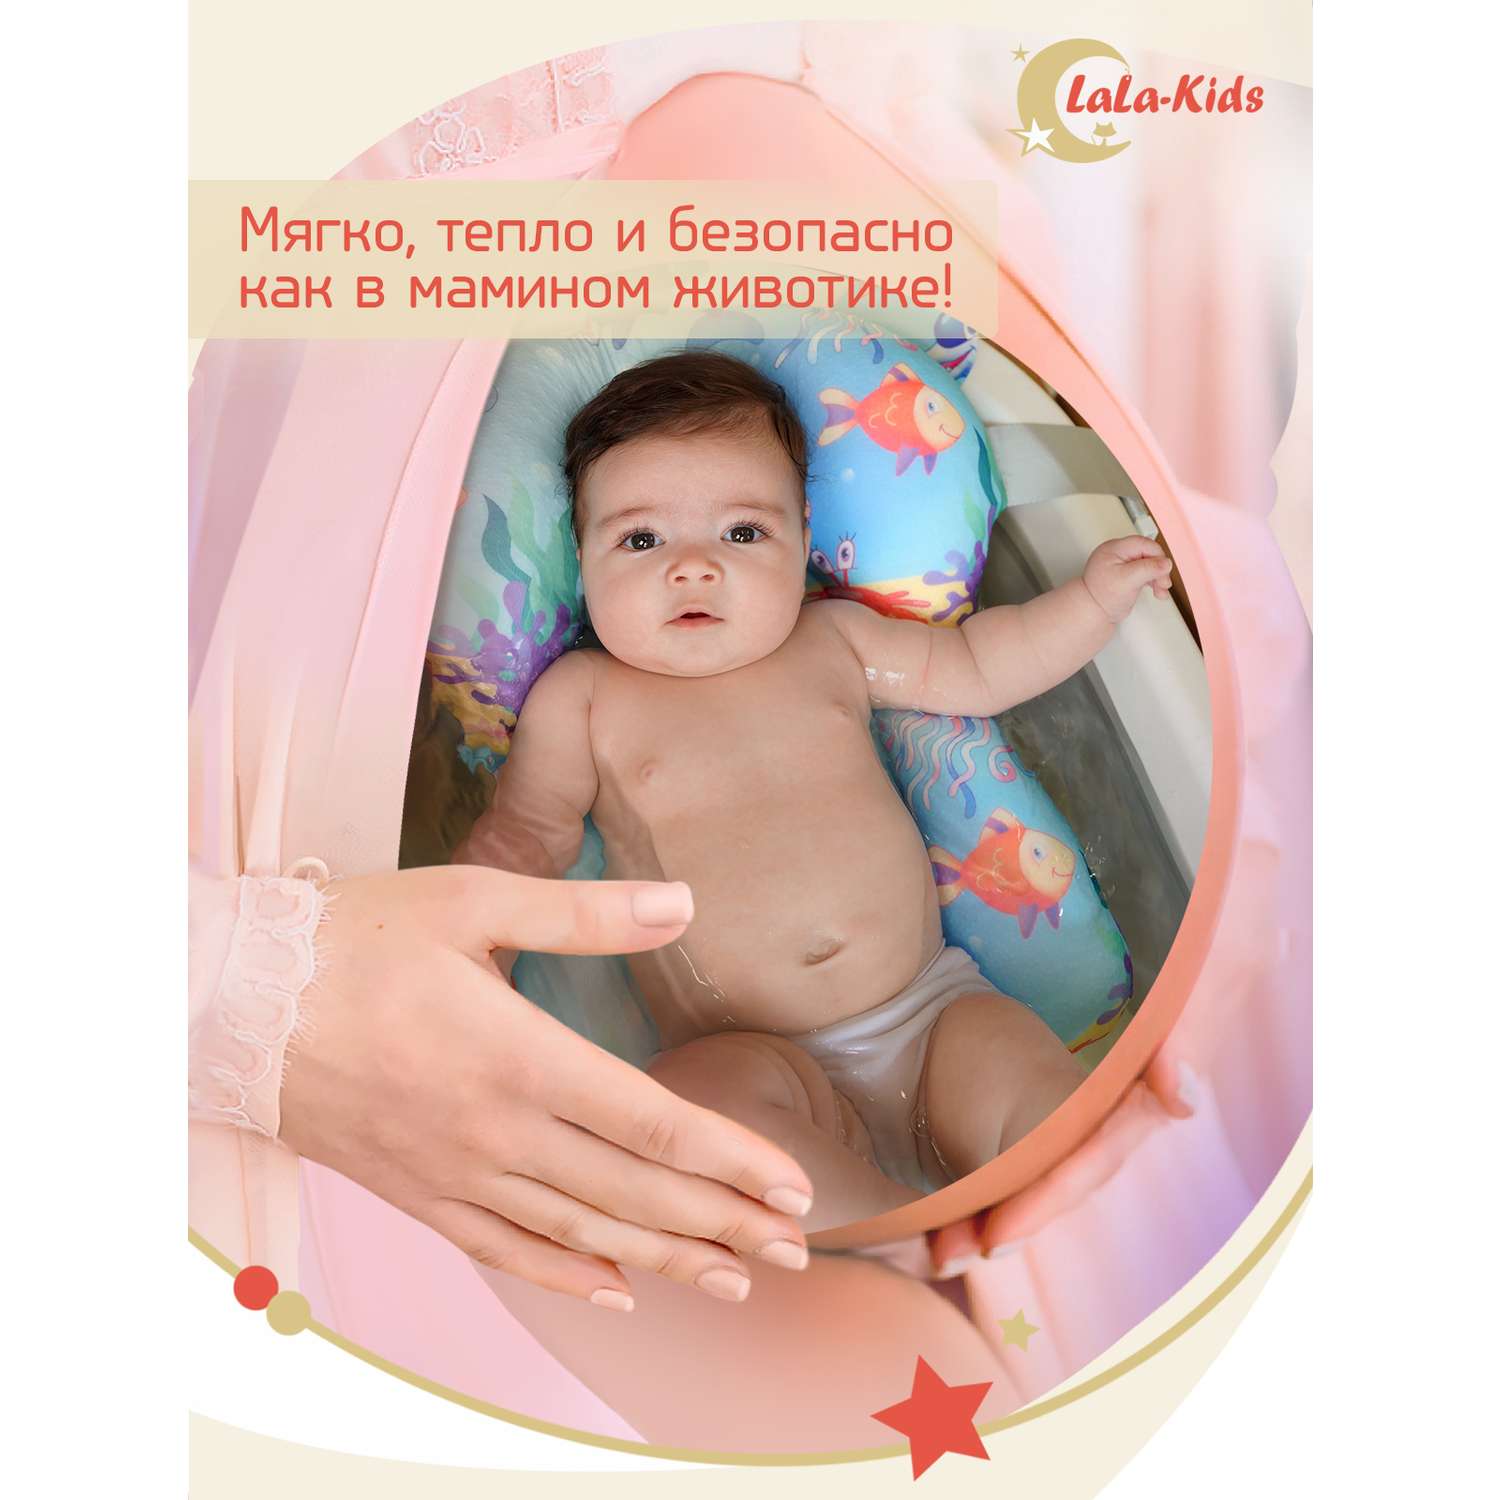 Детская ванночка LaLa-Kids складная для купания новорожденных с термометром и матрасиком в комплекте - фото 13